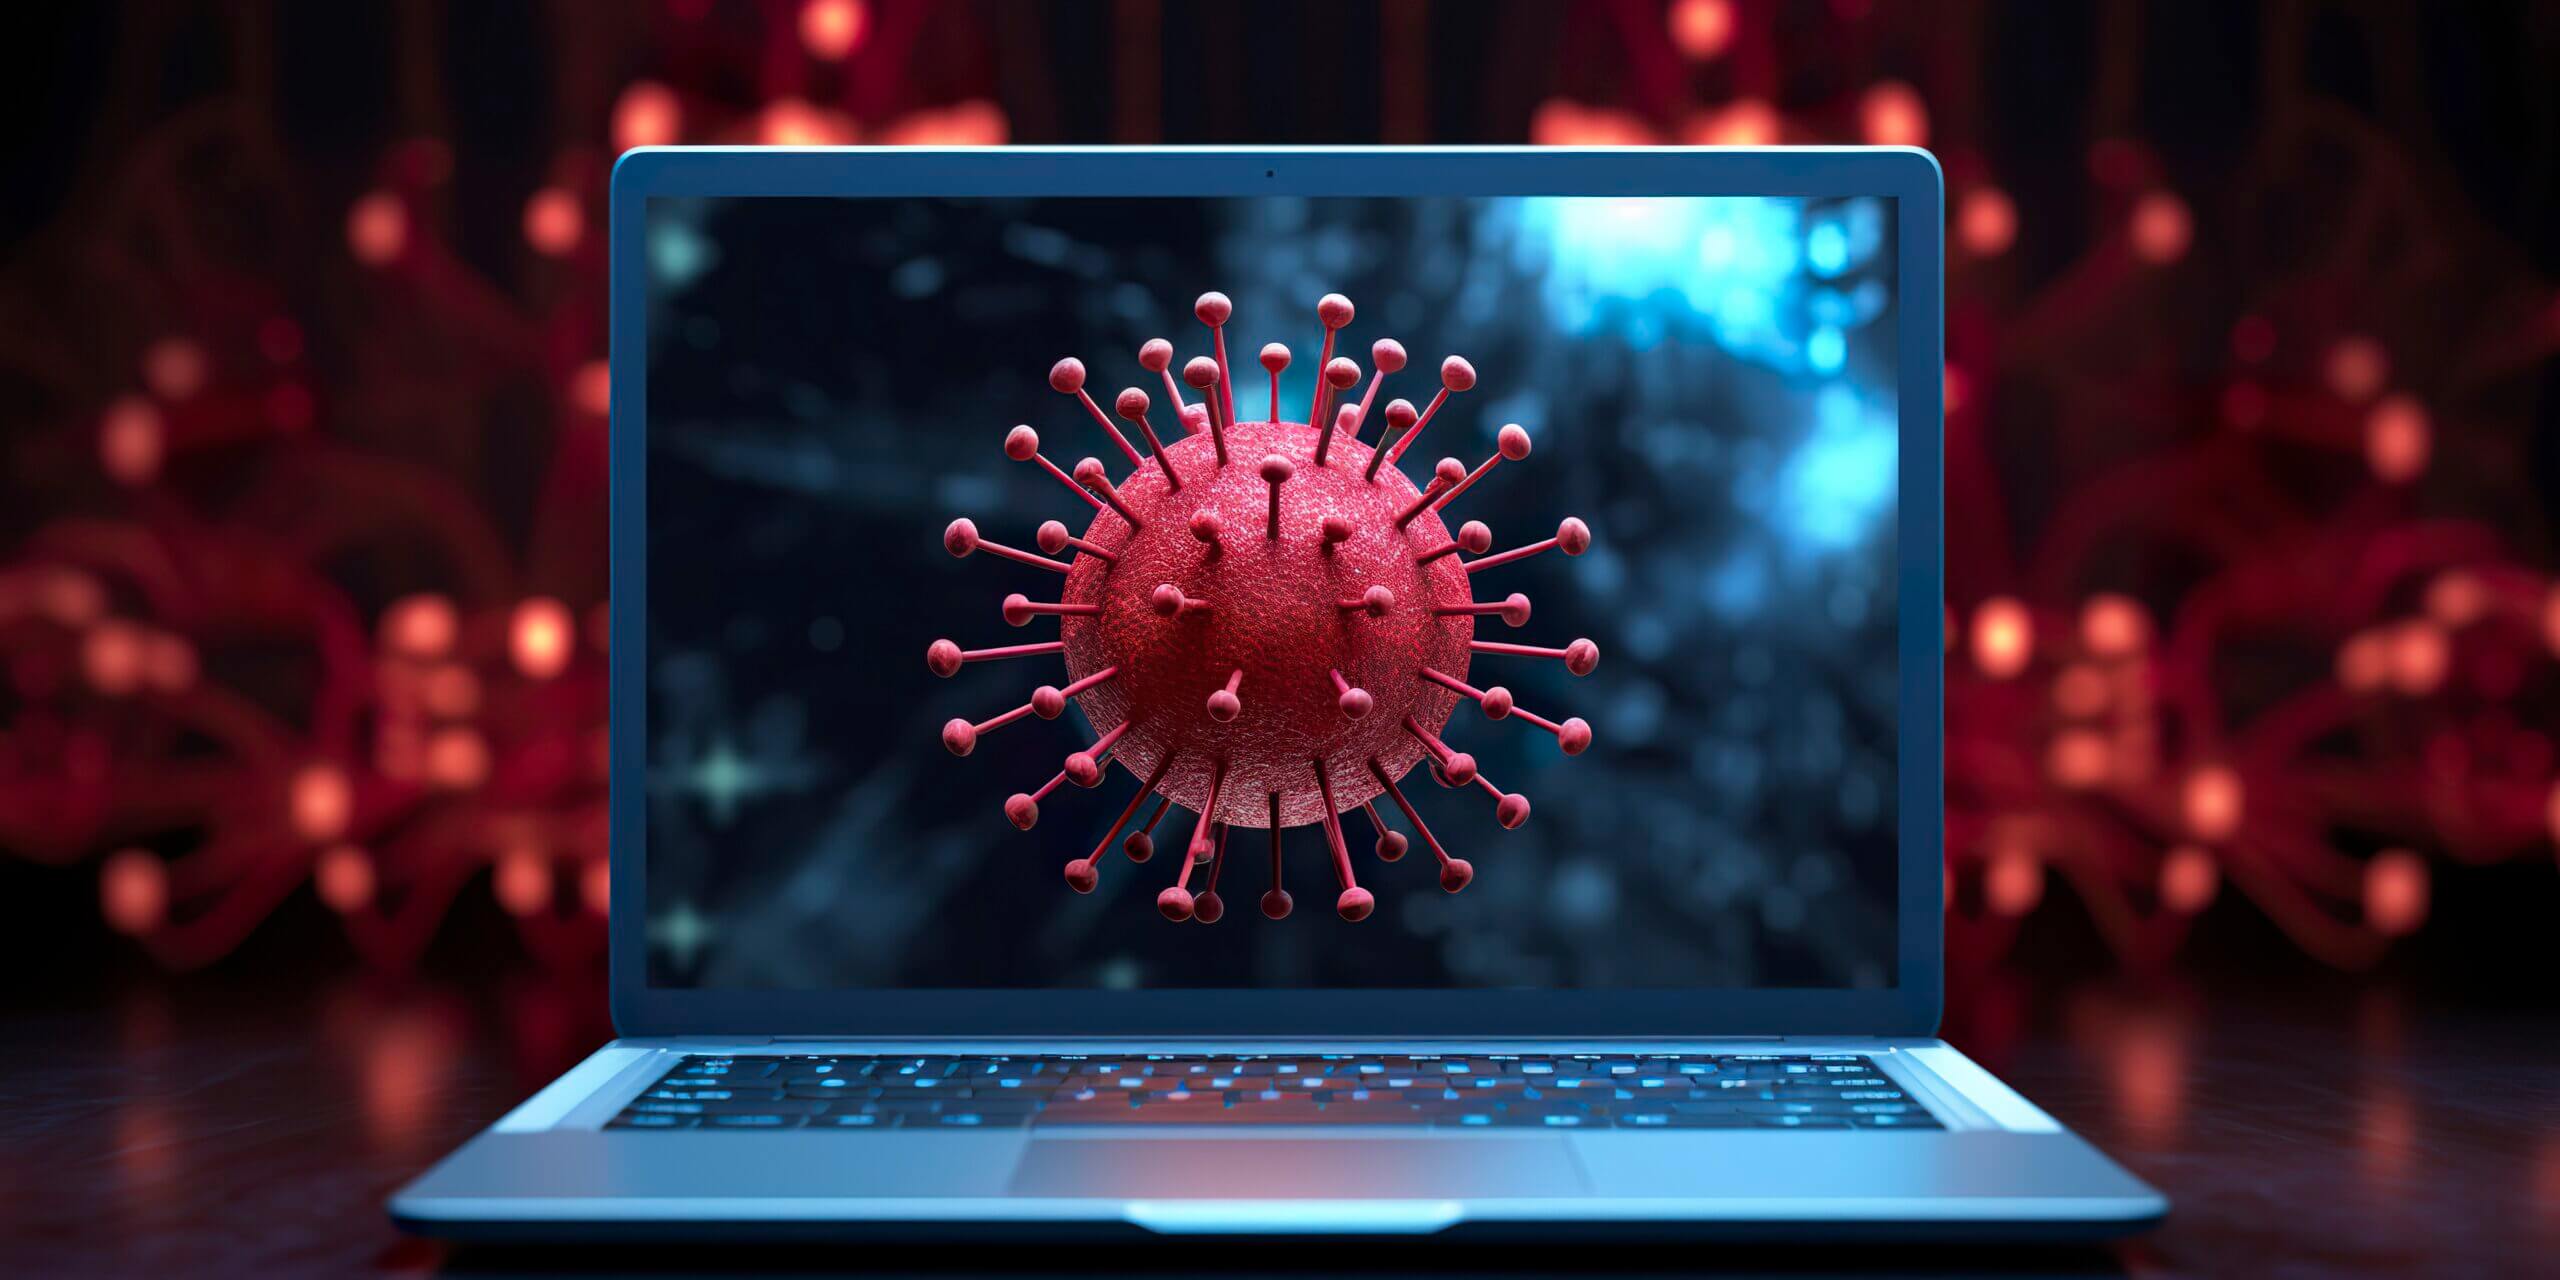 Eliminación de virus: cómo proteger tu computadora y tus datos